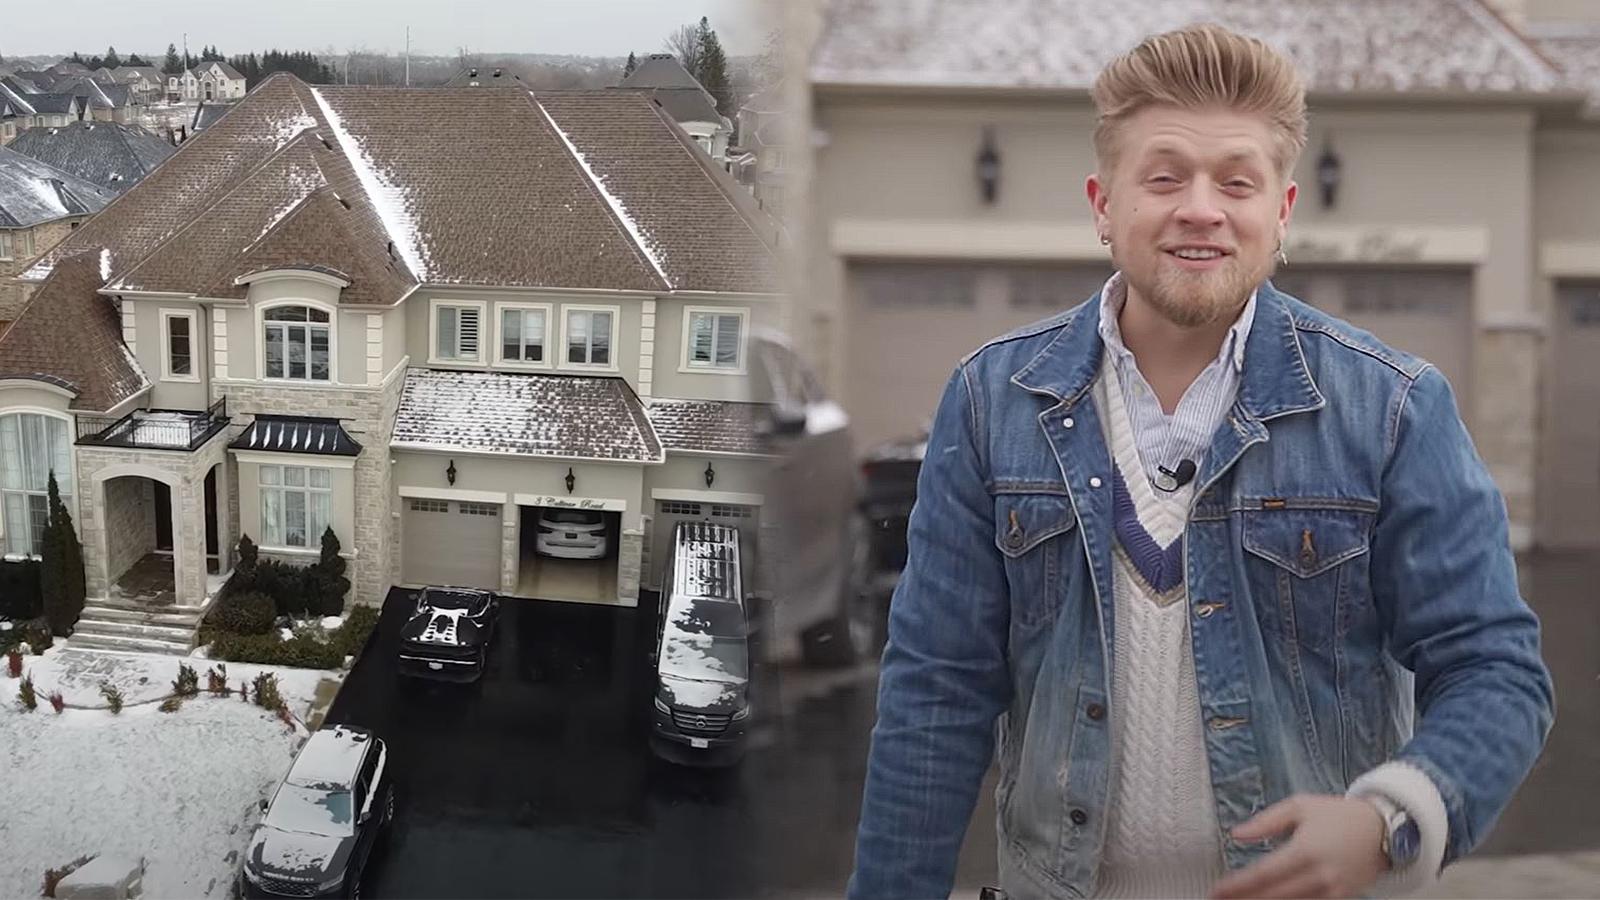 TikToker Aaron Vankampen goes viral for millionaire mansion videos